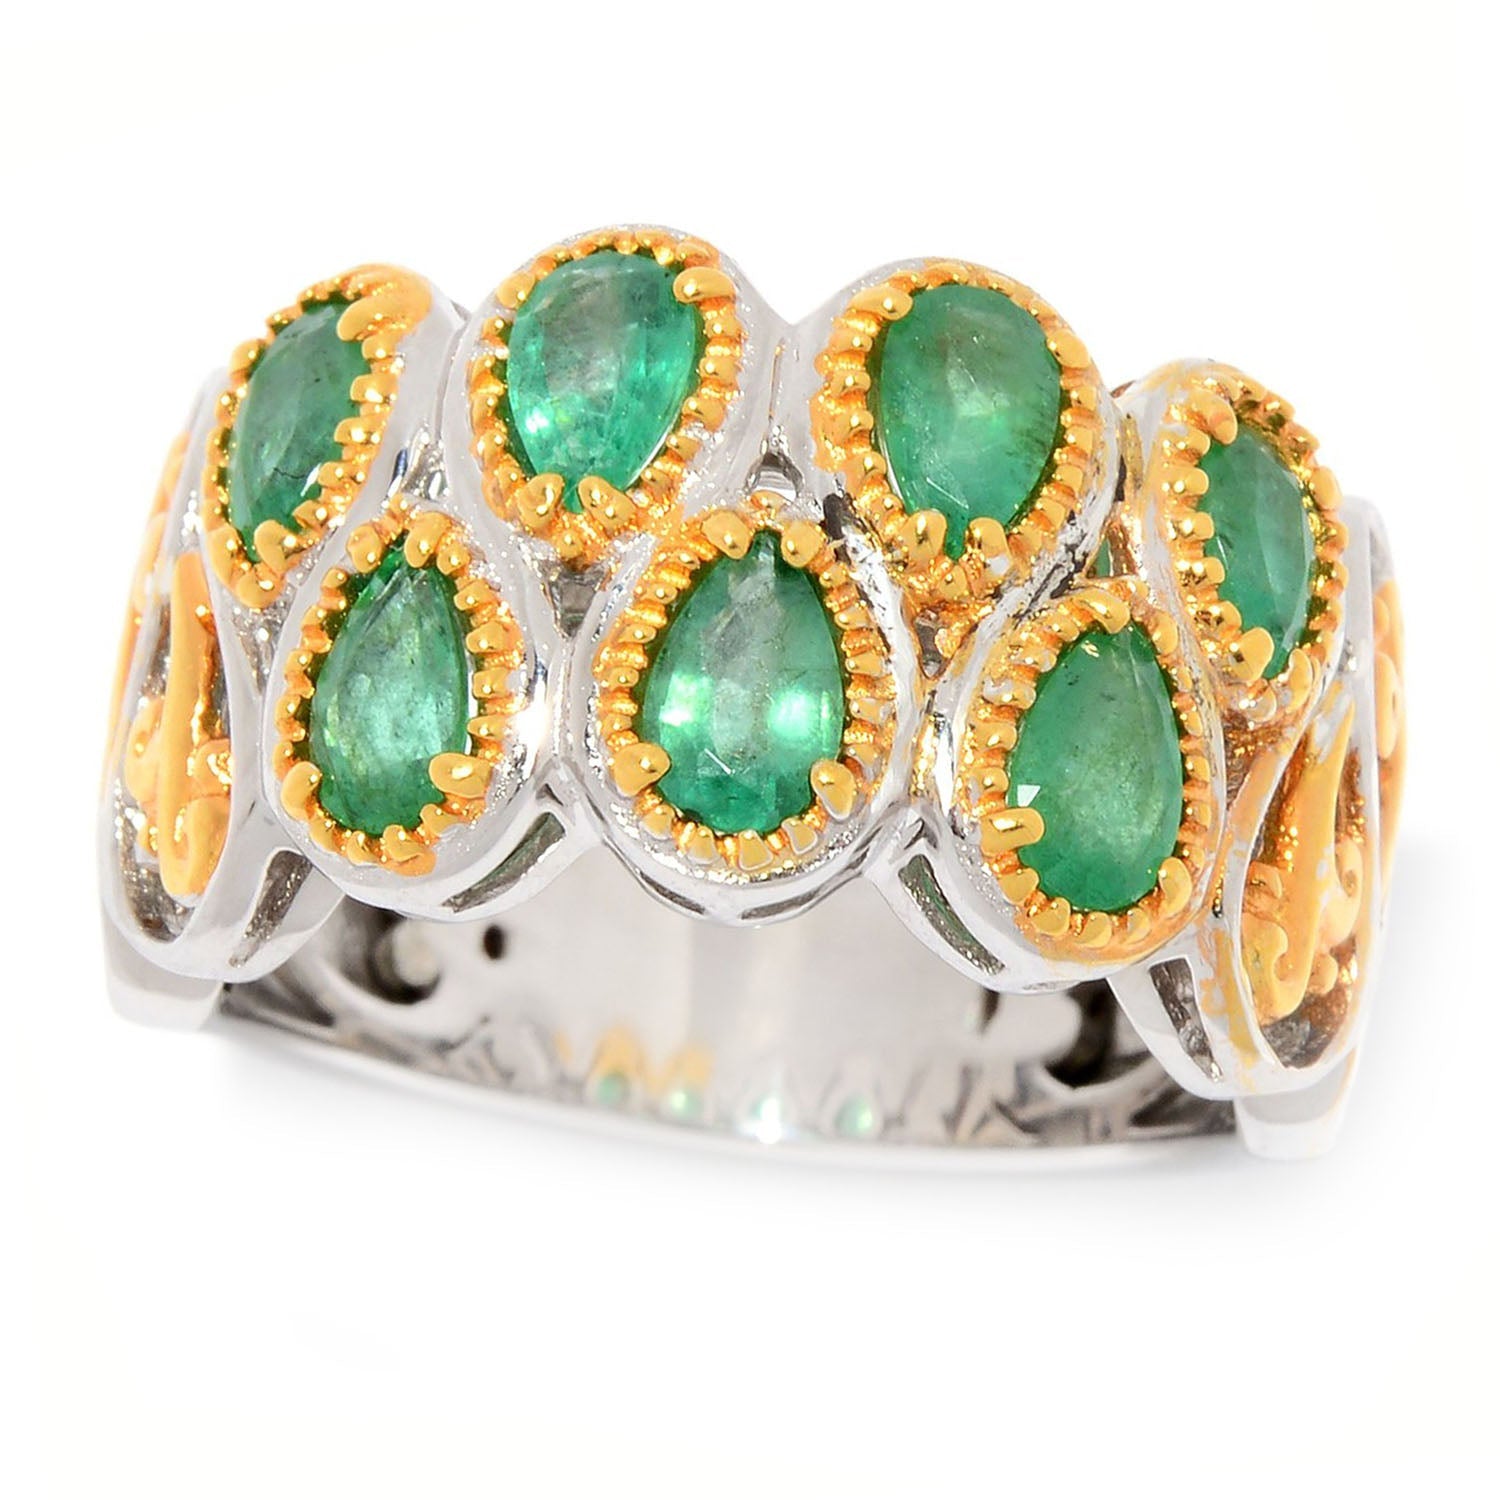 Gems en Vogue 1.29ctw Zambian Emerald 7-Stone Band Ring